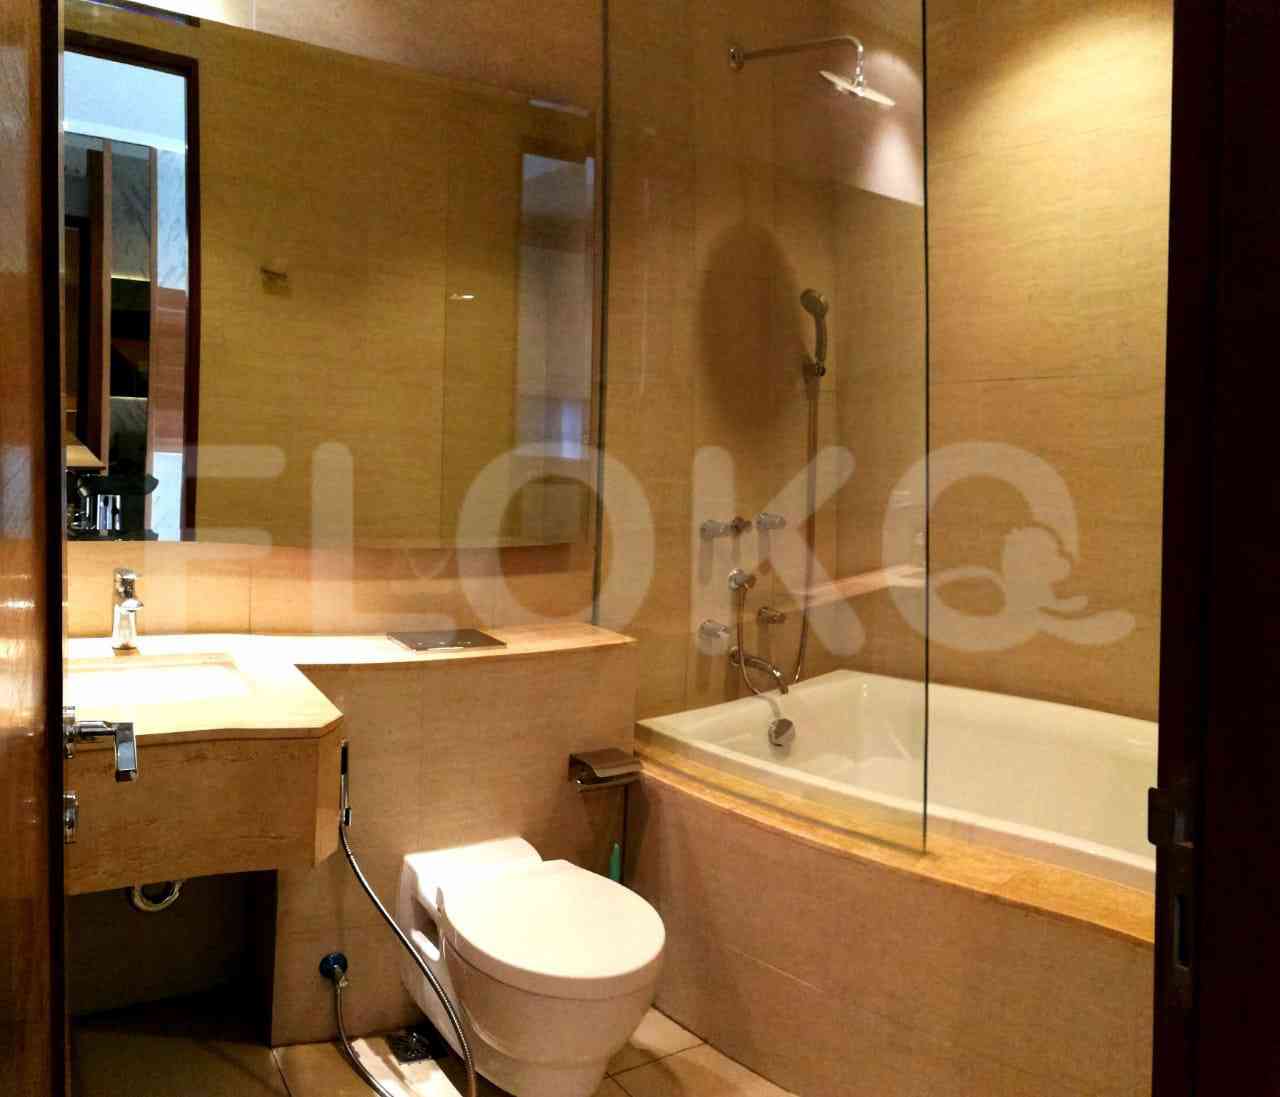 2 Bedroom on 15th Floor for Rent in Taman Anggrek Residence - ftaae7 2